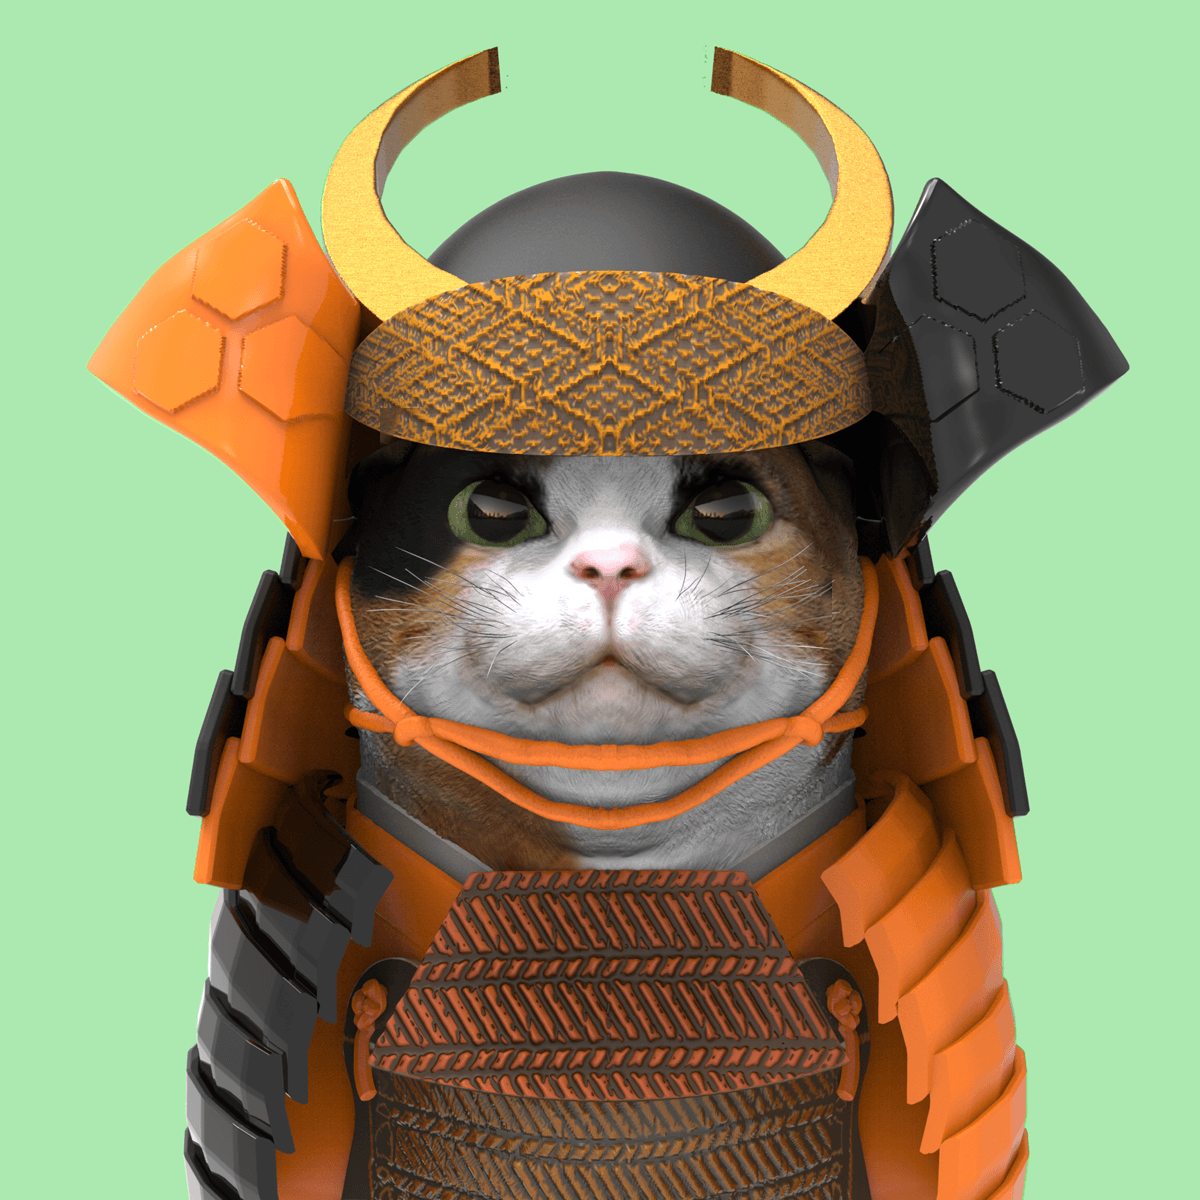 armored cat 015